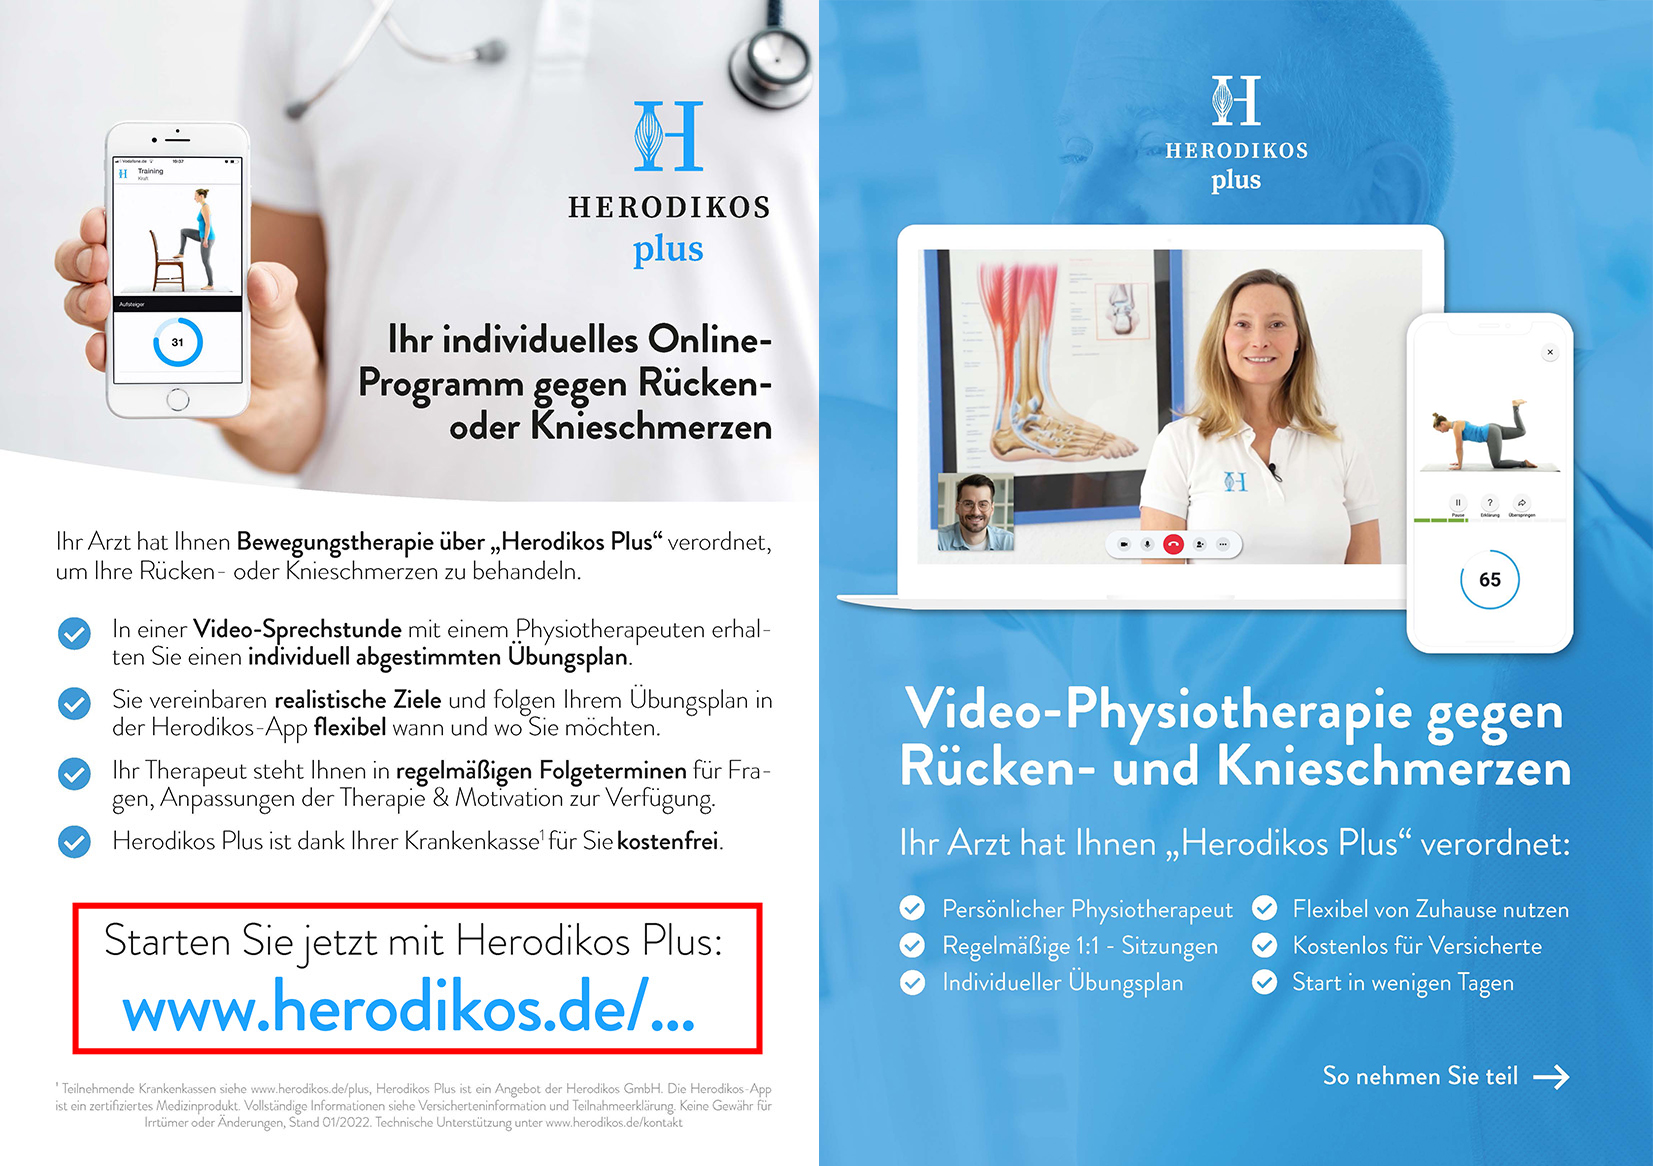 Beispiel Patienten-Flyer Herodikos plus